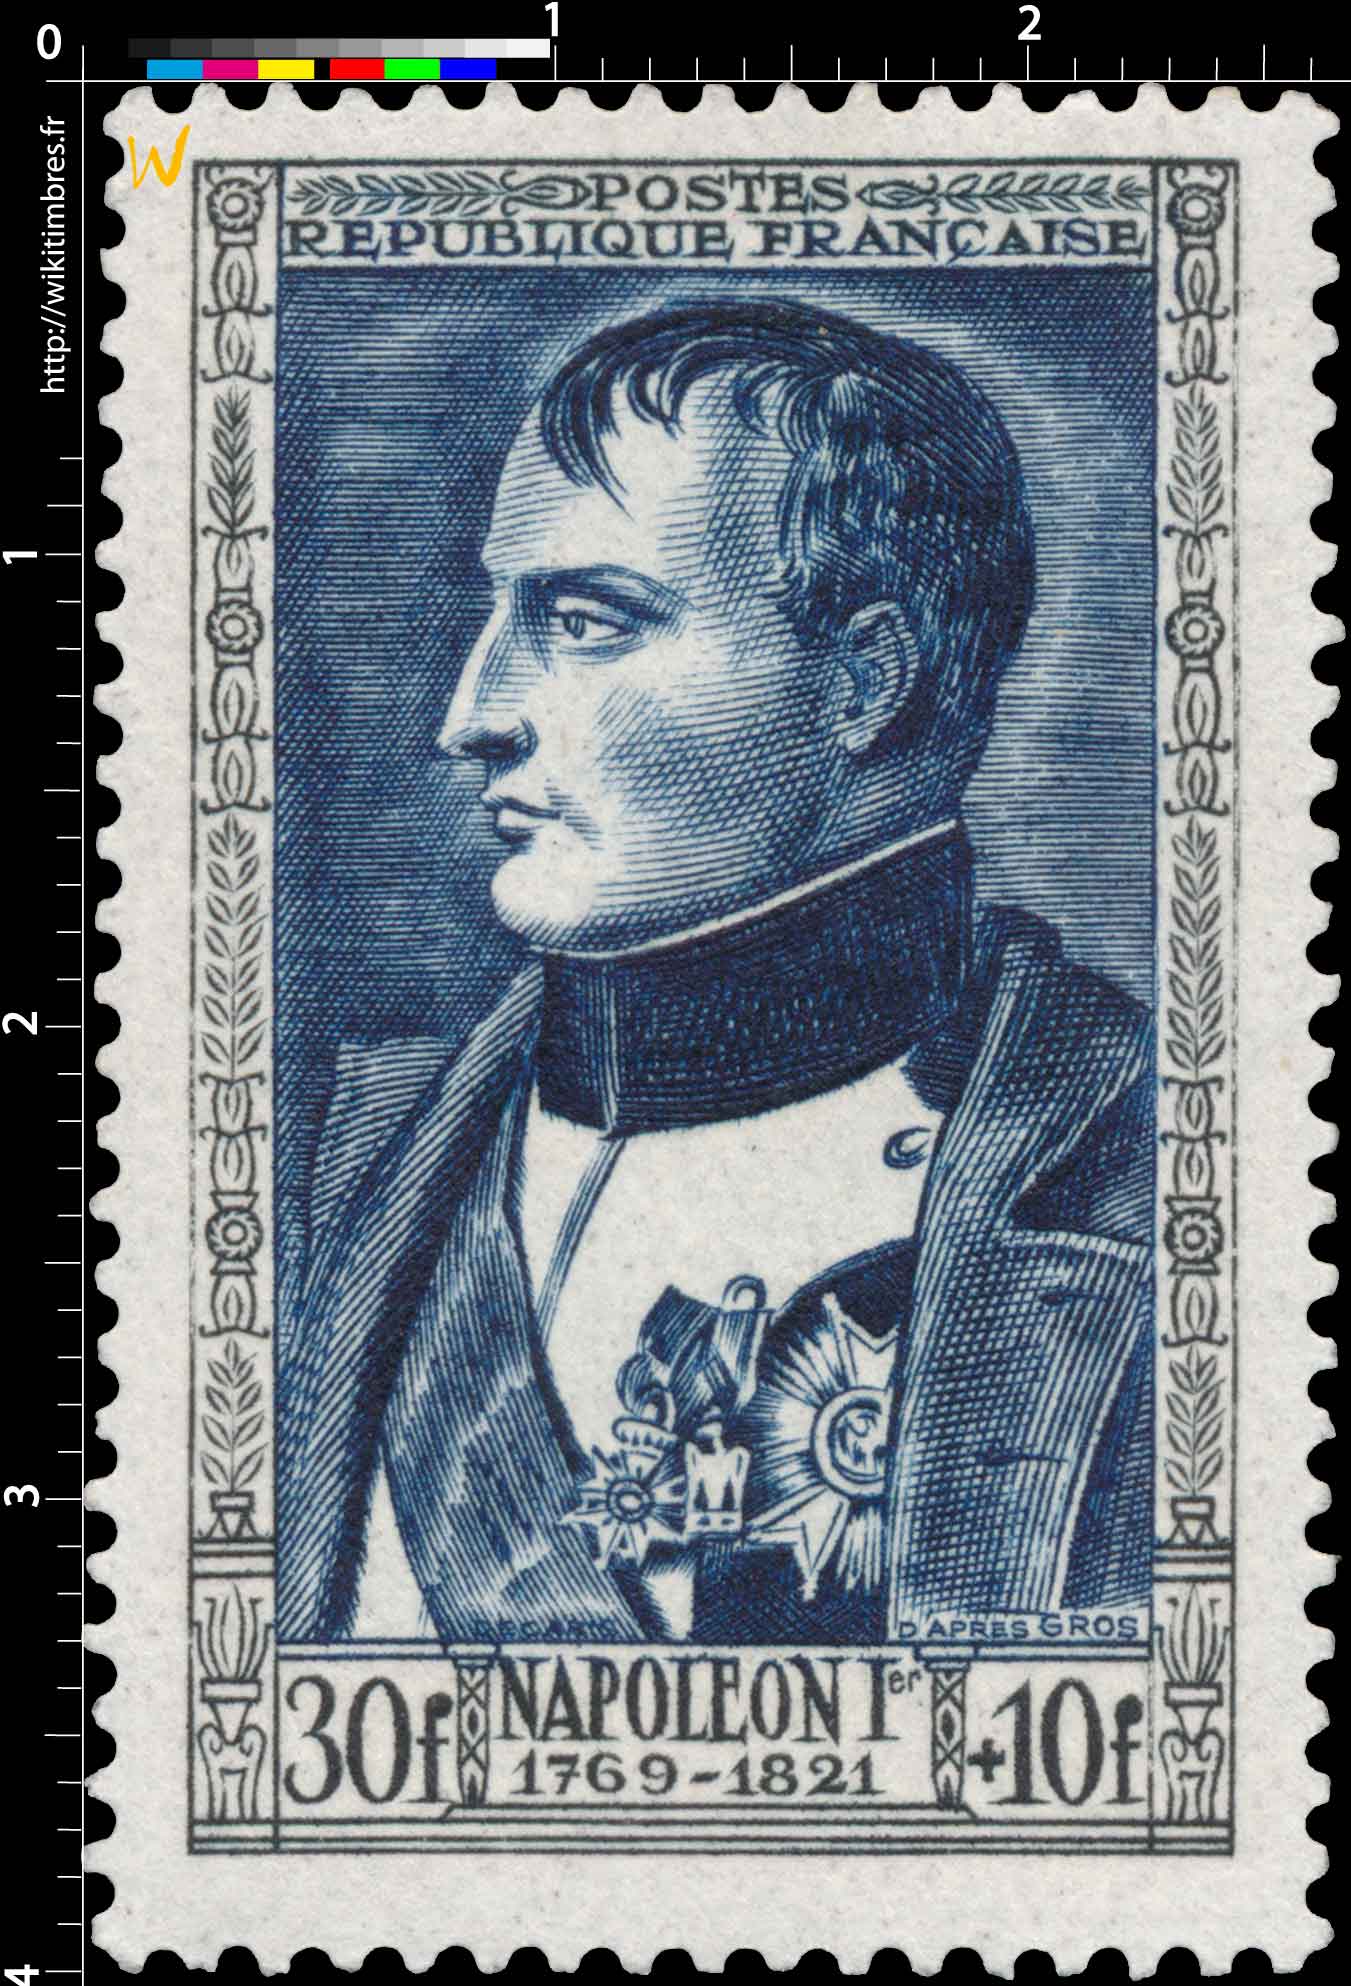 NAPOLÉON 1er 1769-1821